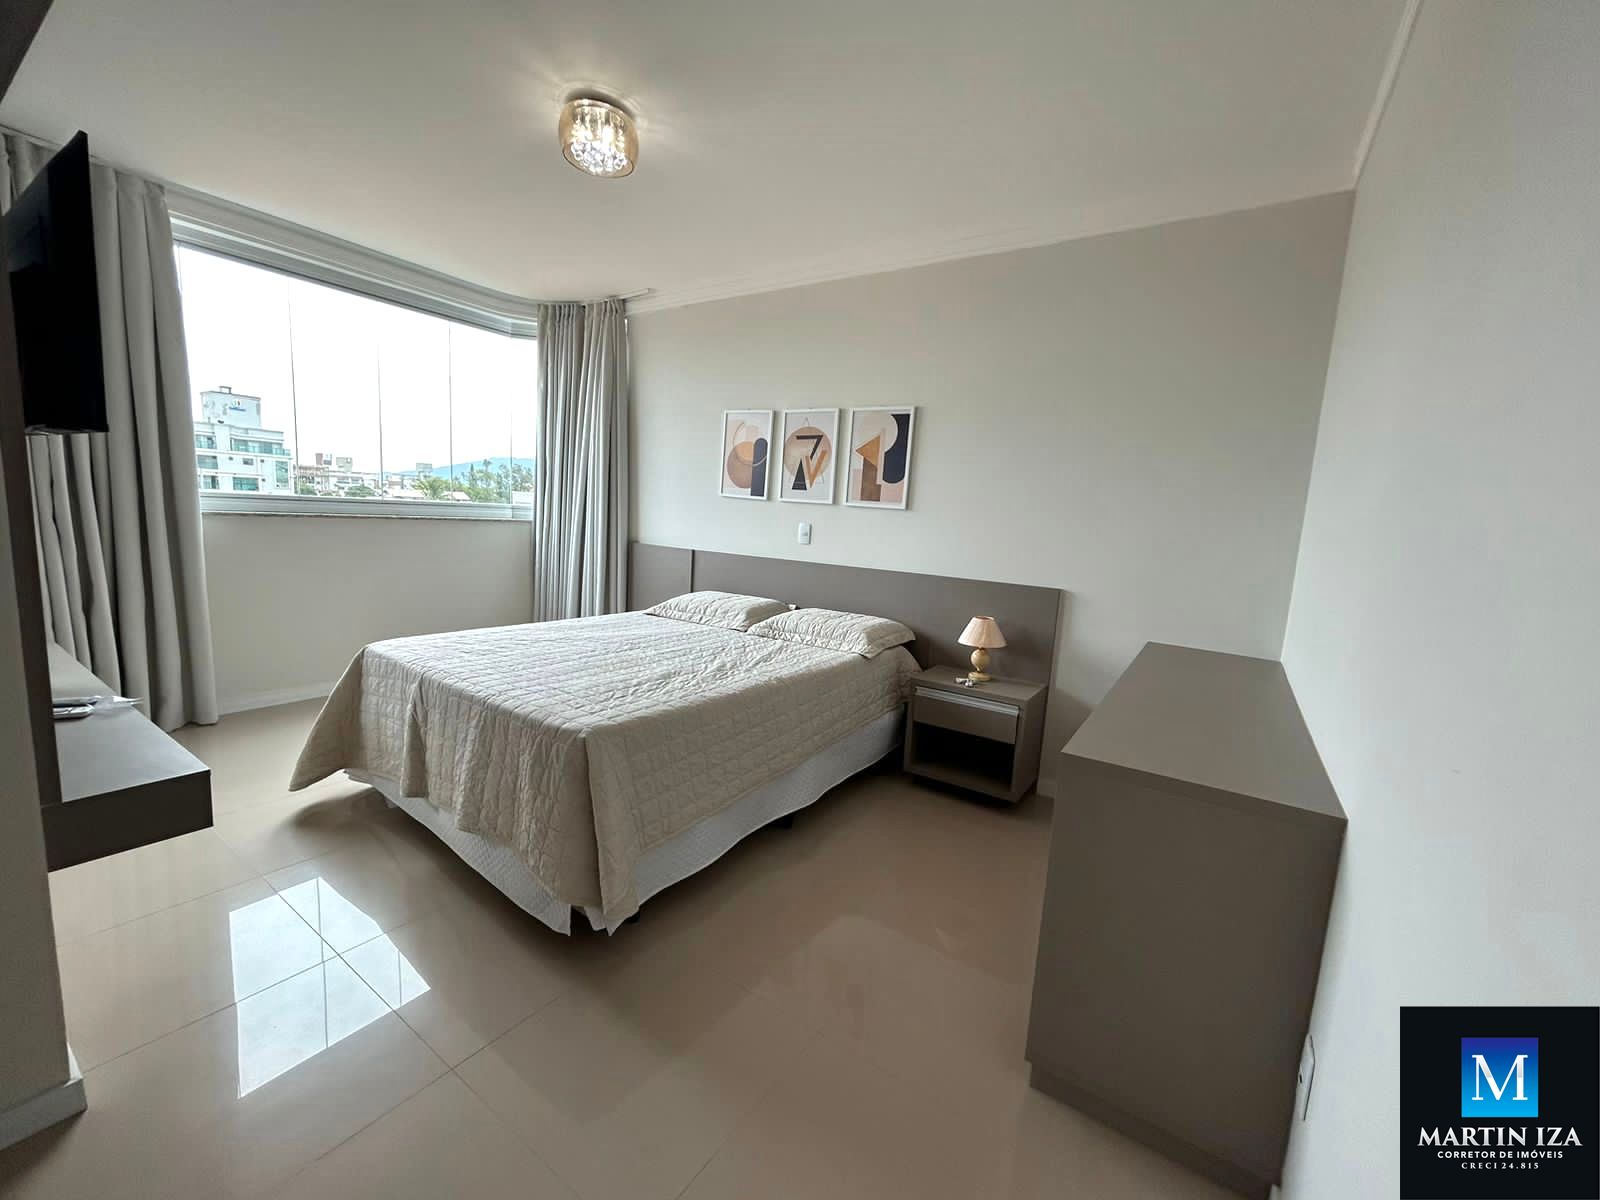 Cobertura com 3 Dormitórios para alugar, 160 m² por R$ 500,00